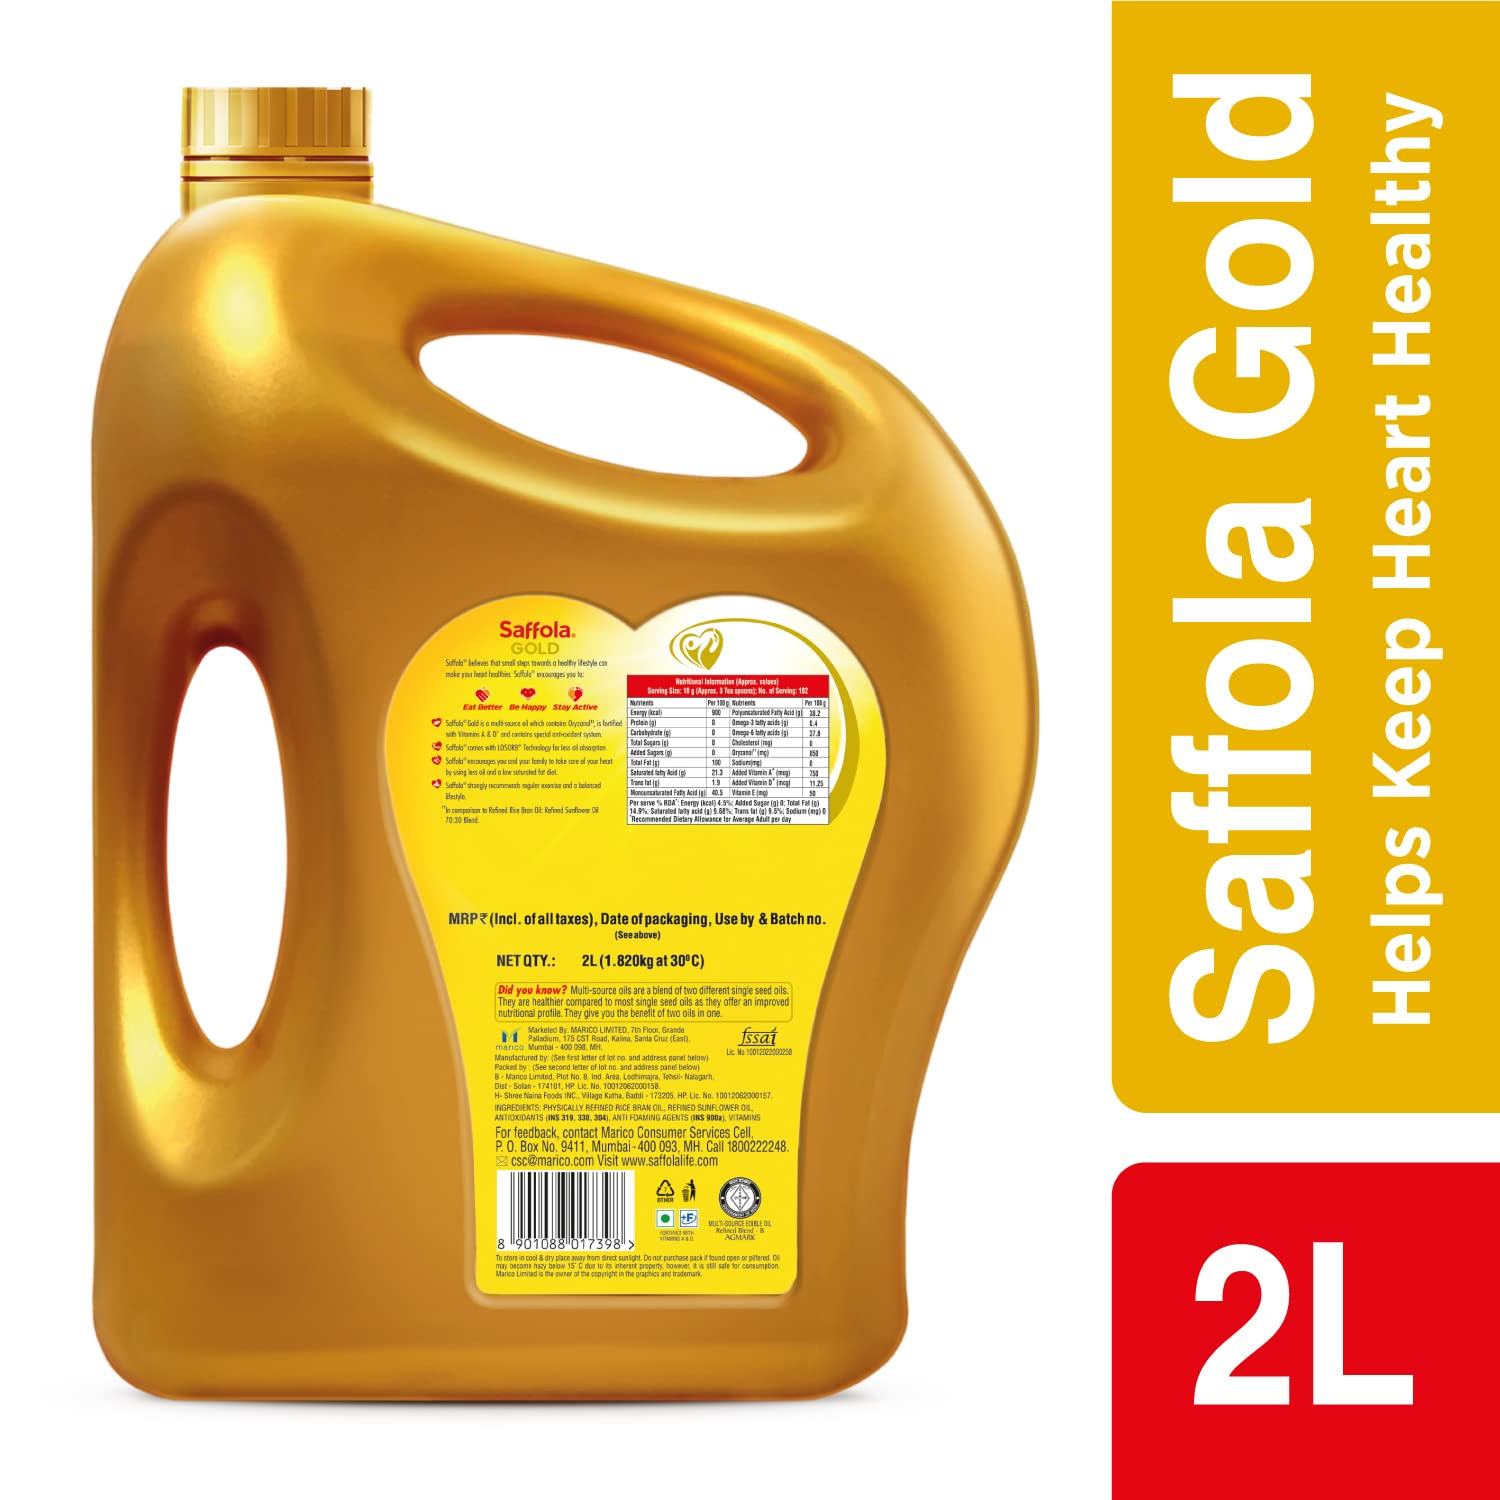 Saffola gold multi-source edible oil